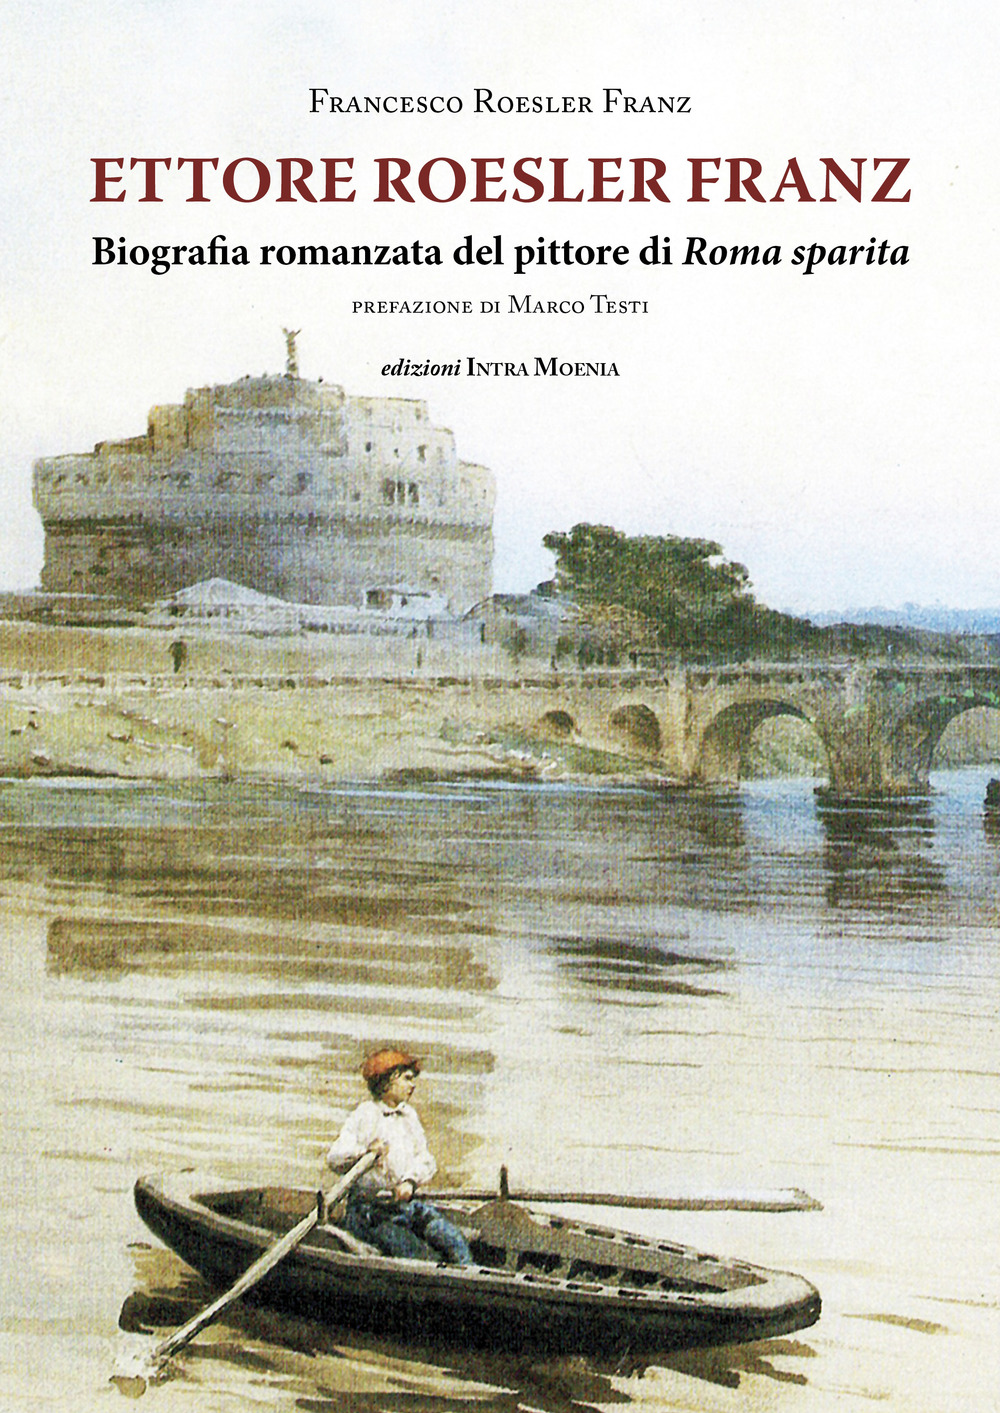 Ettore Roesler Franz. Biografia romanzata del pittore di Roma sparita